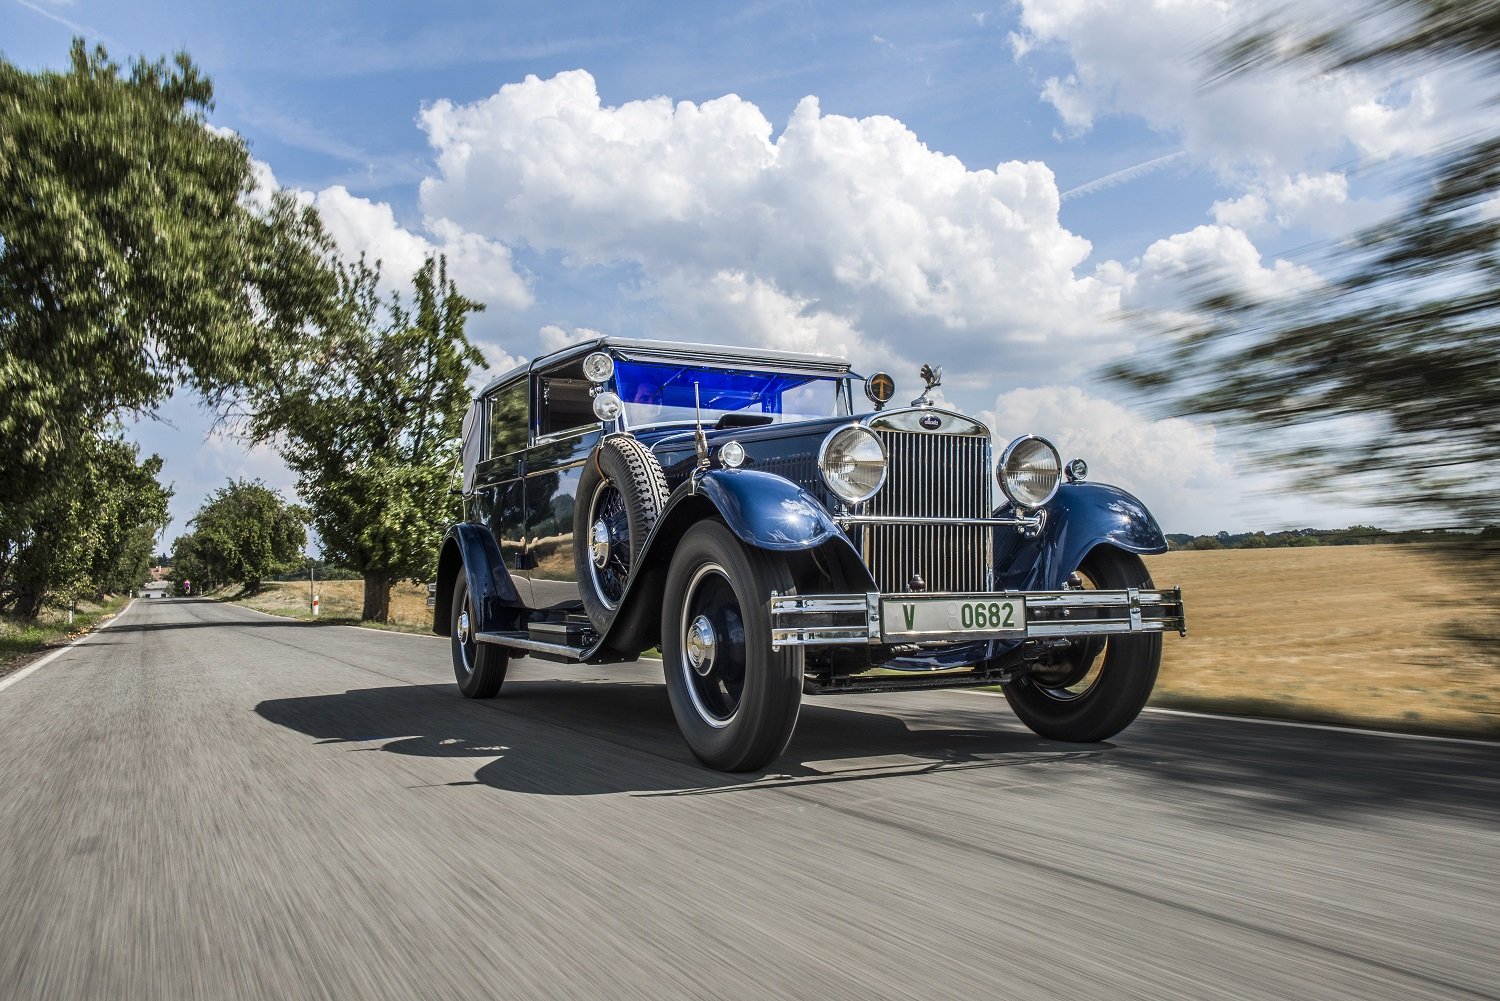 Škoda 860 byl luxusní automobil vyráběný automobilkou Škoda. Vyráběl se od roku 1929. Byly to většinou šestimístné až osmimísté limuzíny ale vyráběly se např. i kabriolety. Motor byl vodou chlazený řadový osmiálec SV o objemu 3380 cm³, měl výkon 44 kW. Maximální rychlost byla 110 km/h. Vůz vážil 1265 – 1850 kg.